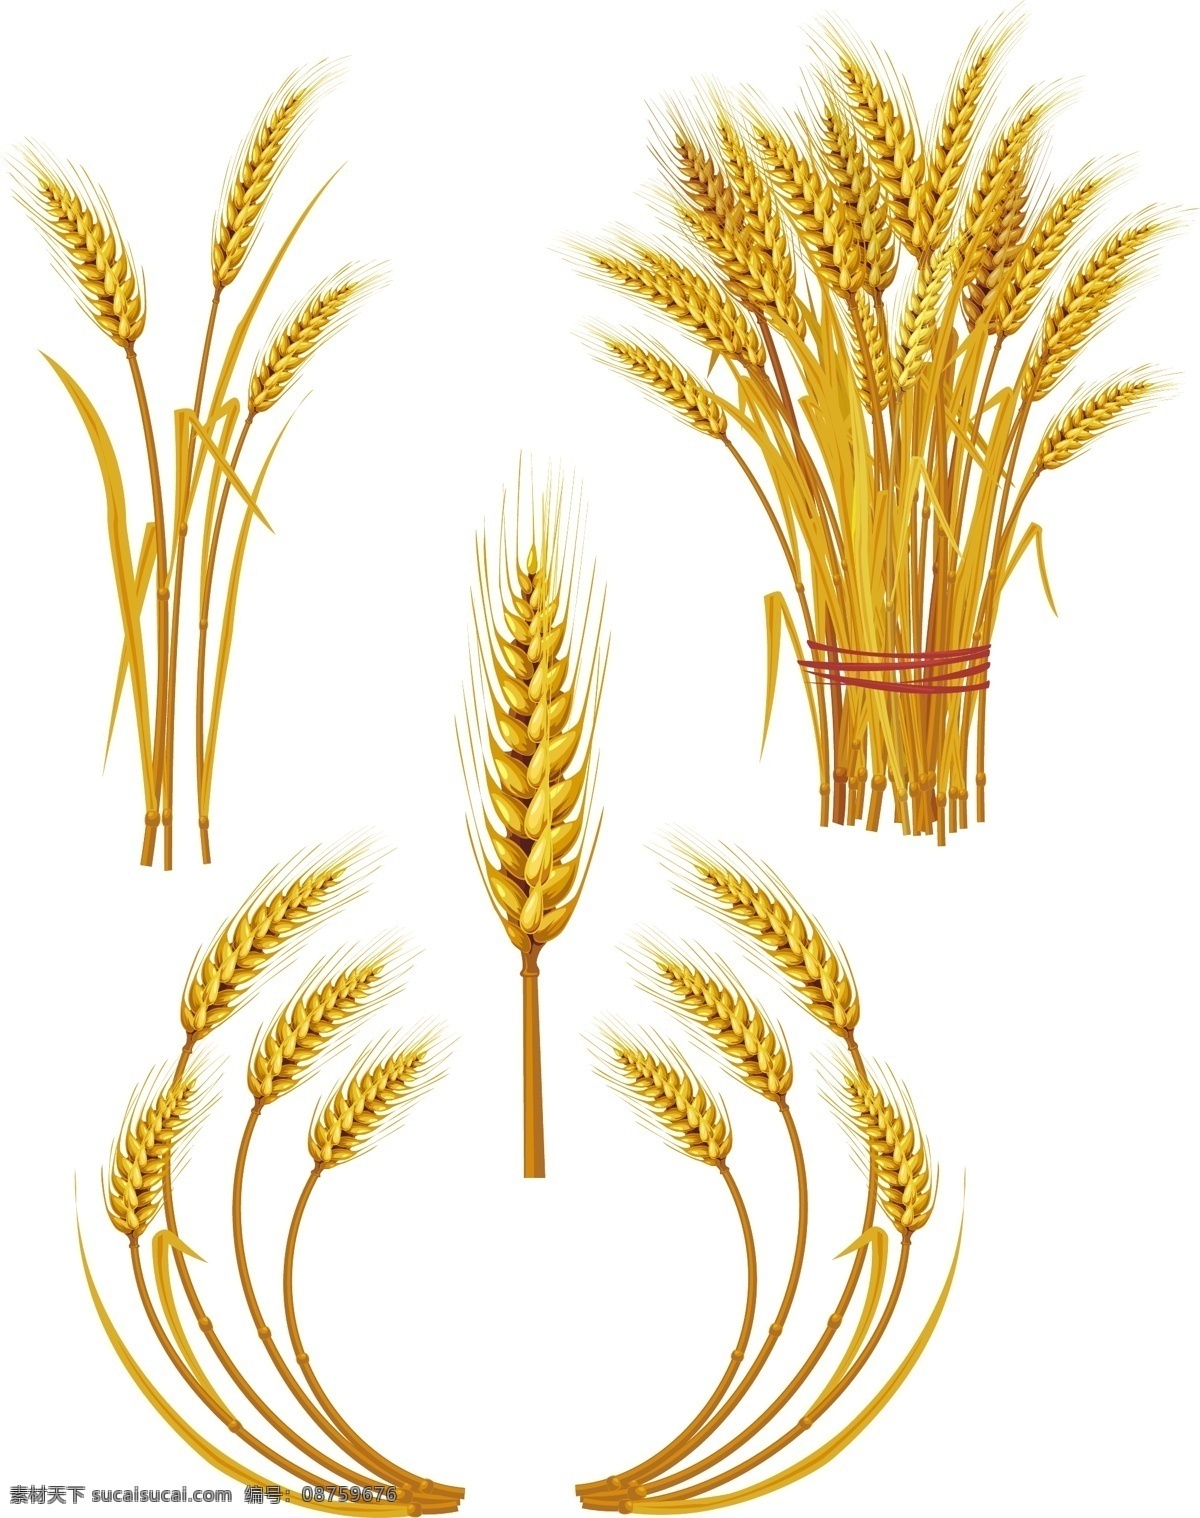 麦穗矢量素材 麦穗 小麦 稻穗 水稻 金黄 丰收 收获 粮食 农作物 农产品 植物 果实 矢量素材 其他矢量 矢量